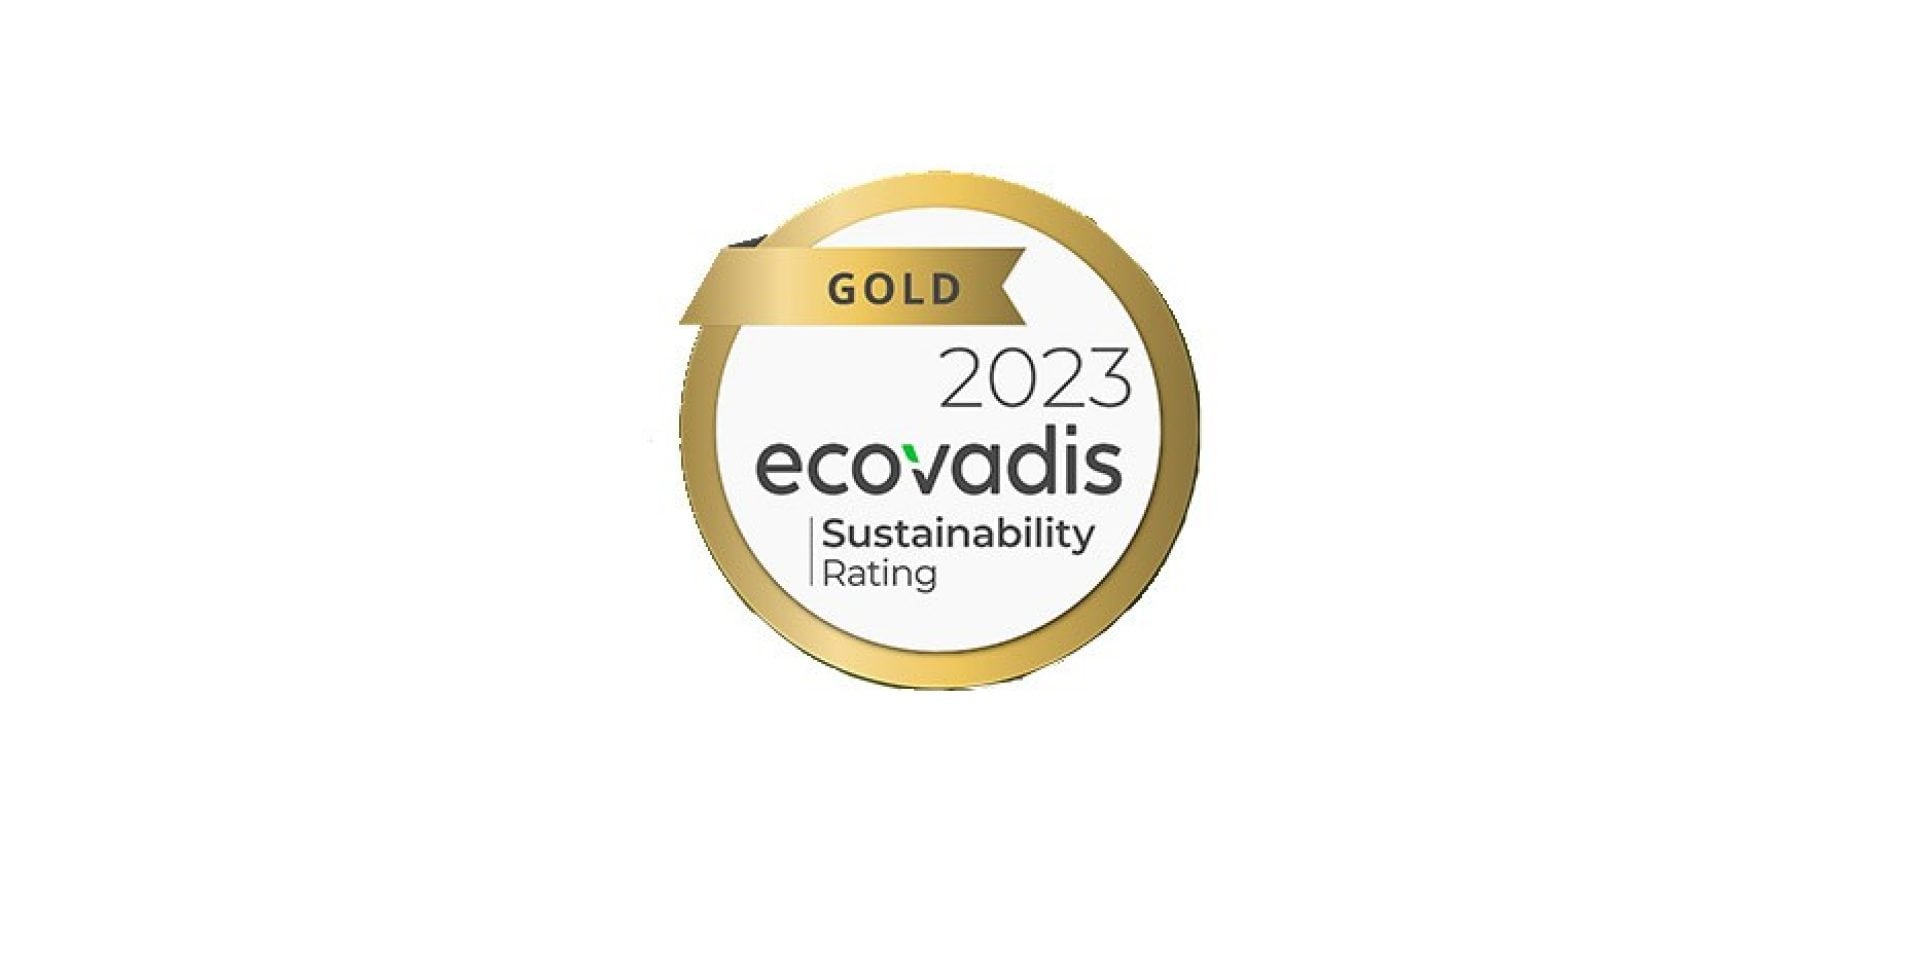 Médaille d'or Ecovadis 2023 décernée à Hilti